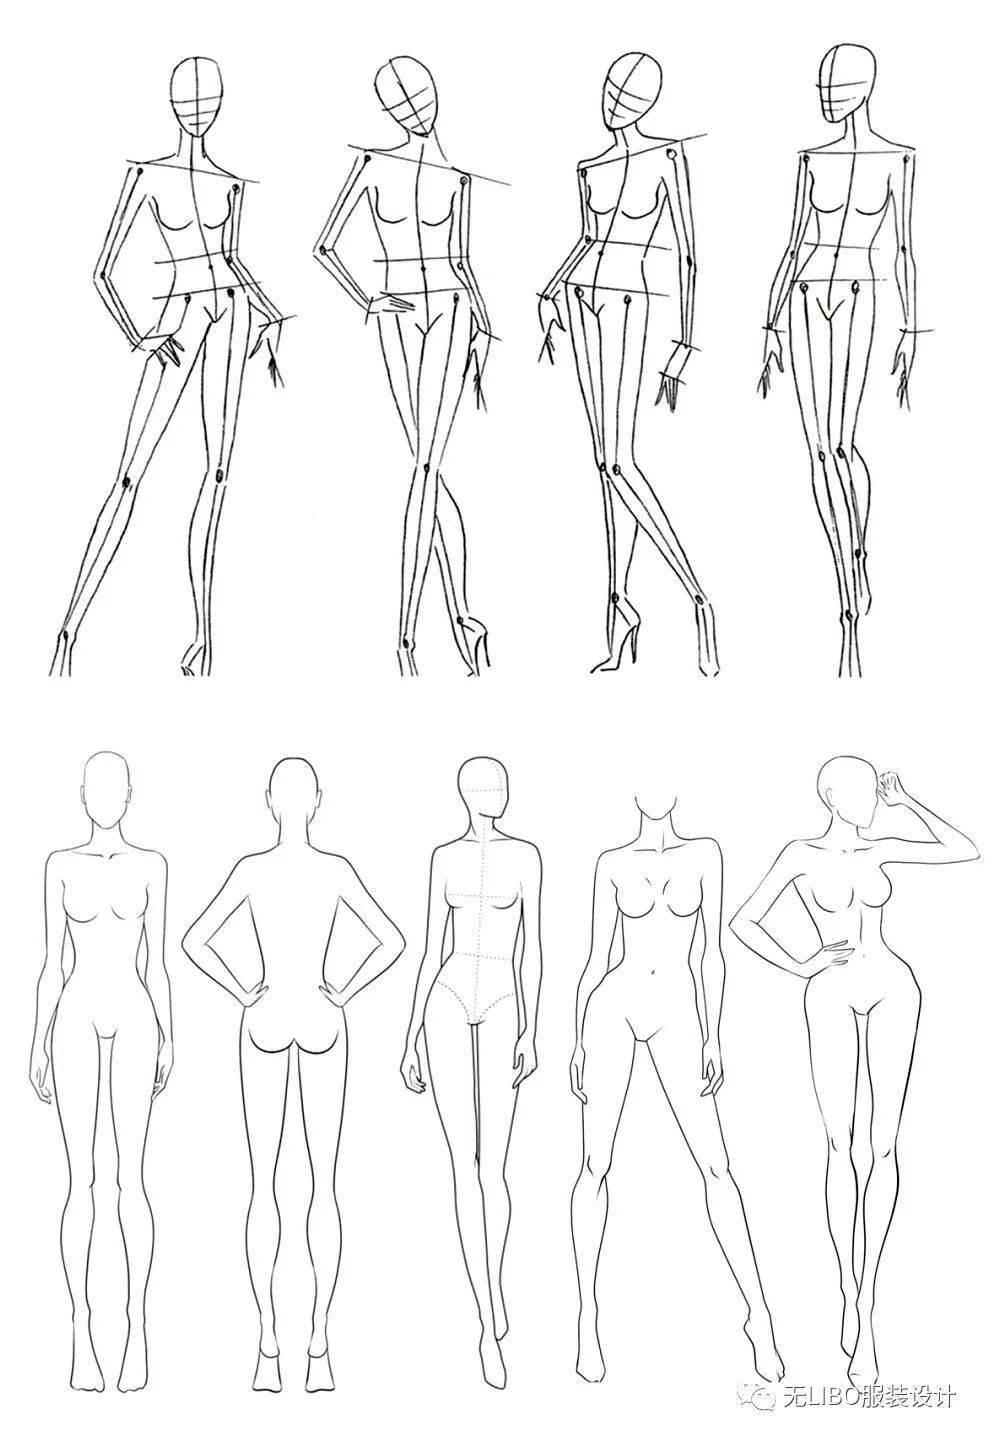 人体是服装画学习中非常重要的一个基本功 ,我们在画服装画时,无论是